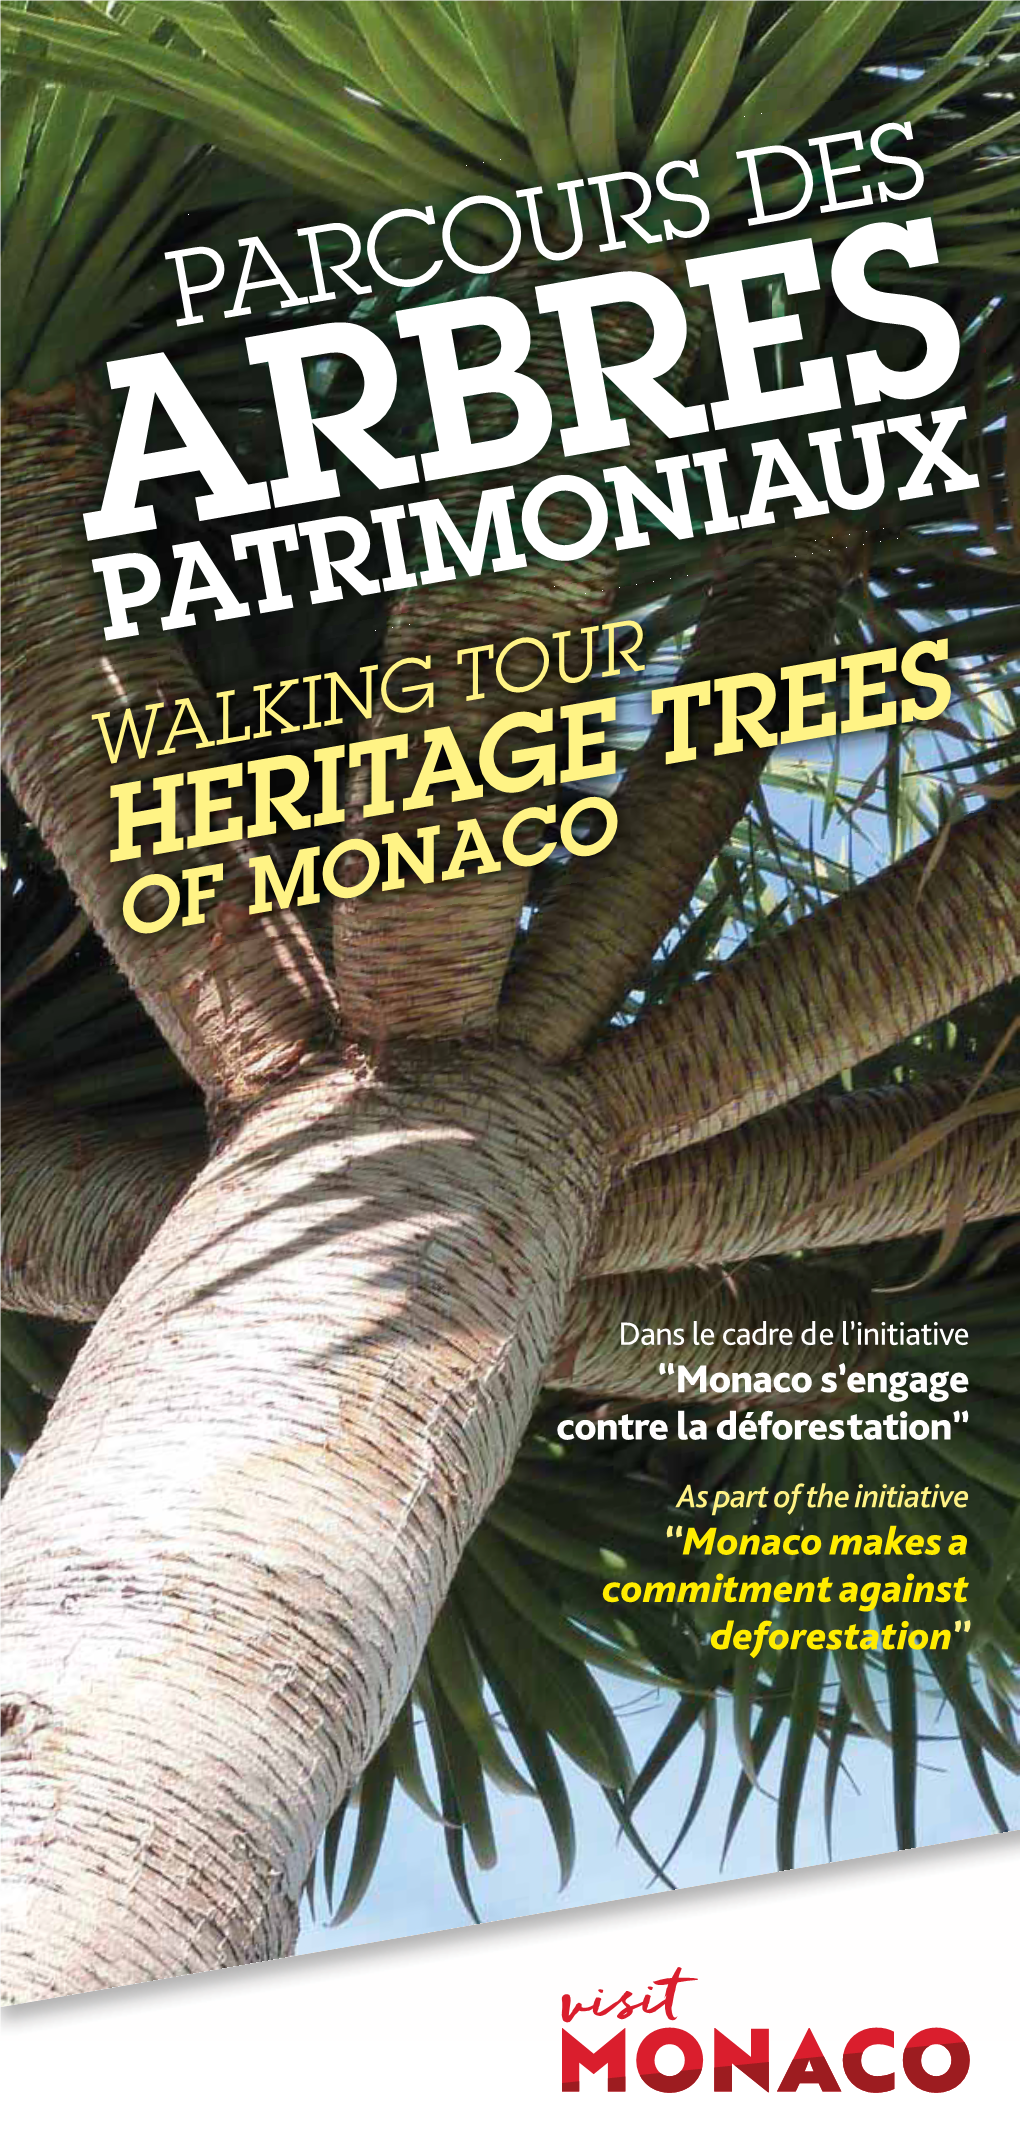 Arbres Patrimoniaux Walking Tour Heritage Trees of Monaco